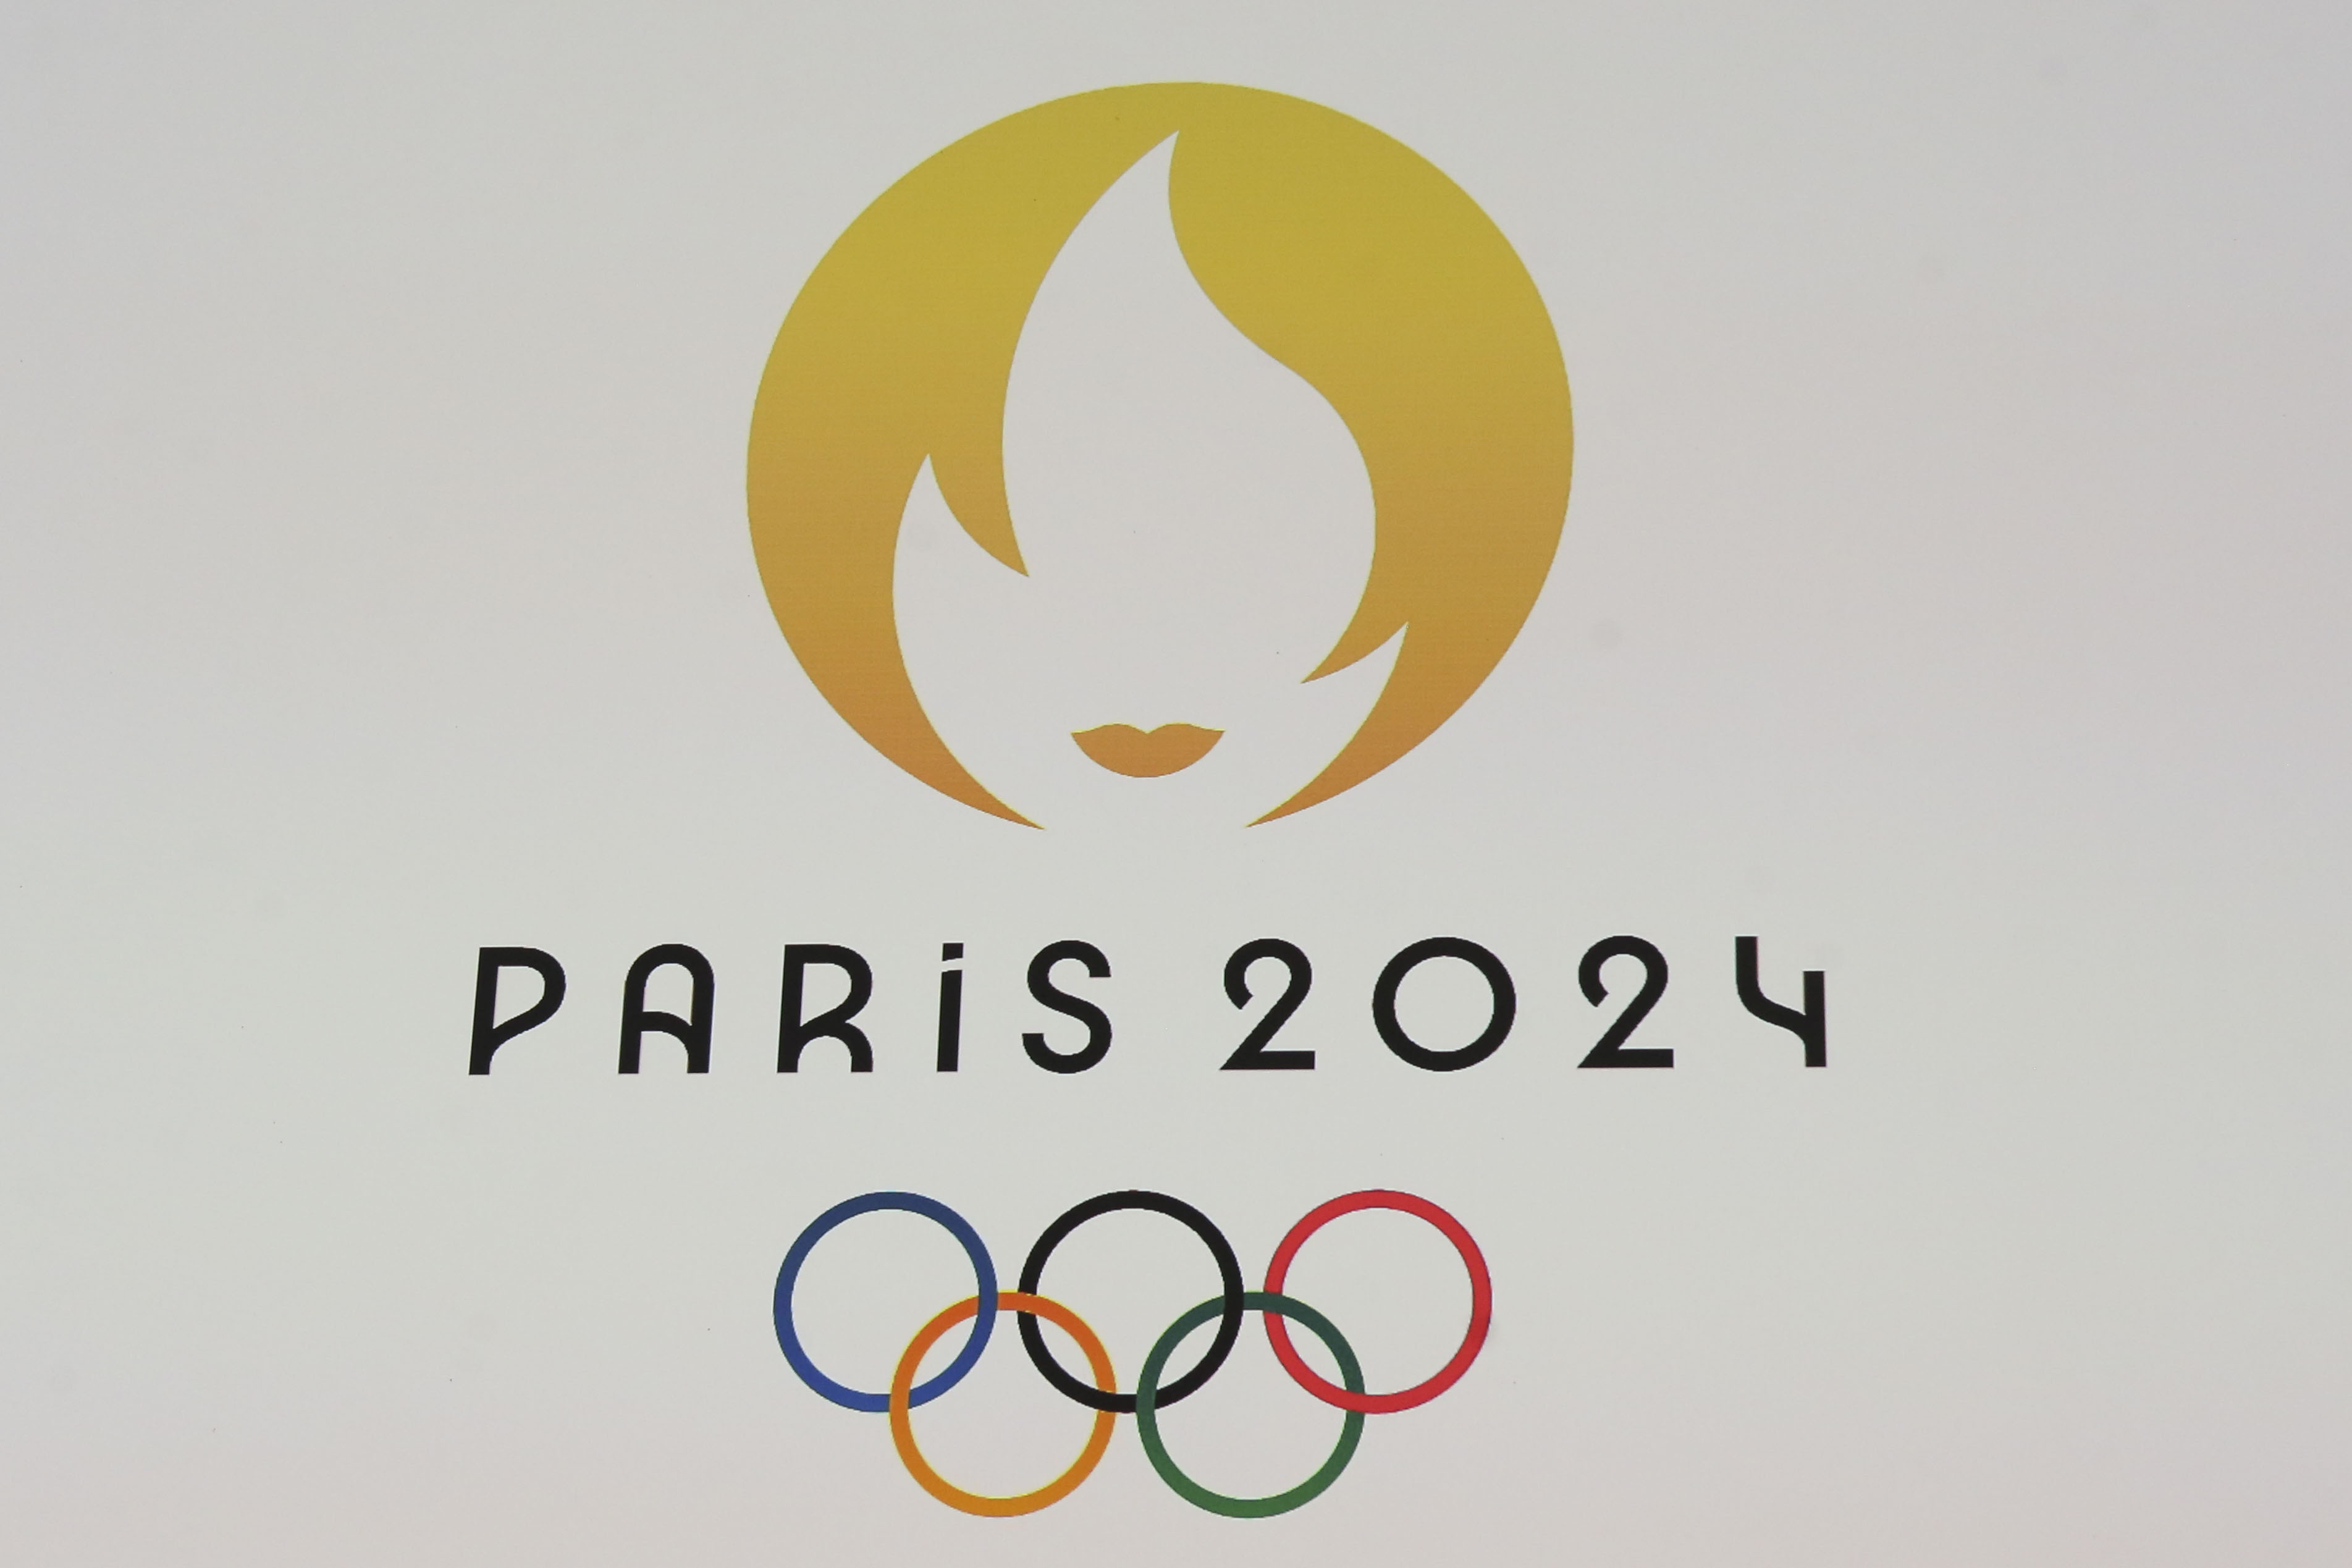 Игры 2024 википедия. Летние Олимпийские игры 2024. Летние Олимпийские игры в Париже 2024 года. Символ олимпиады 2024 в Париже.